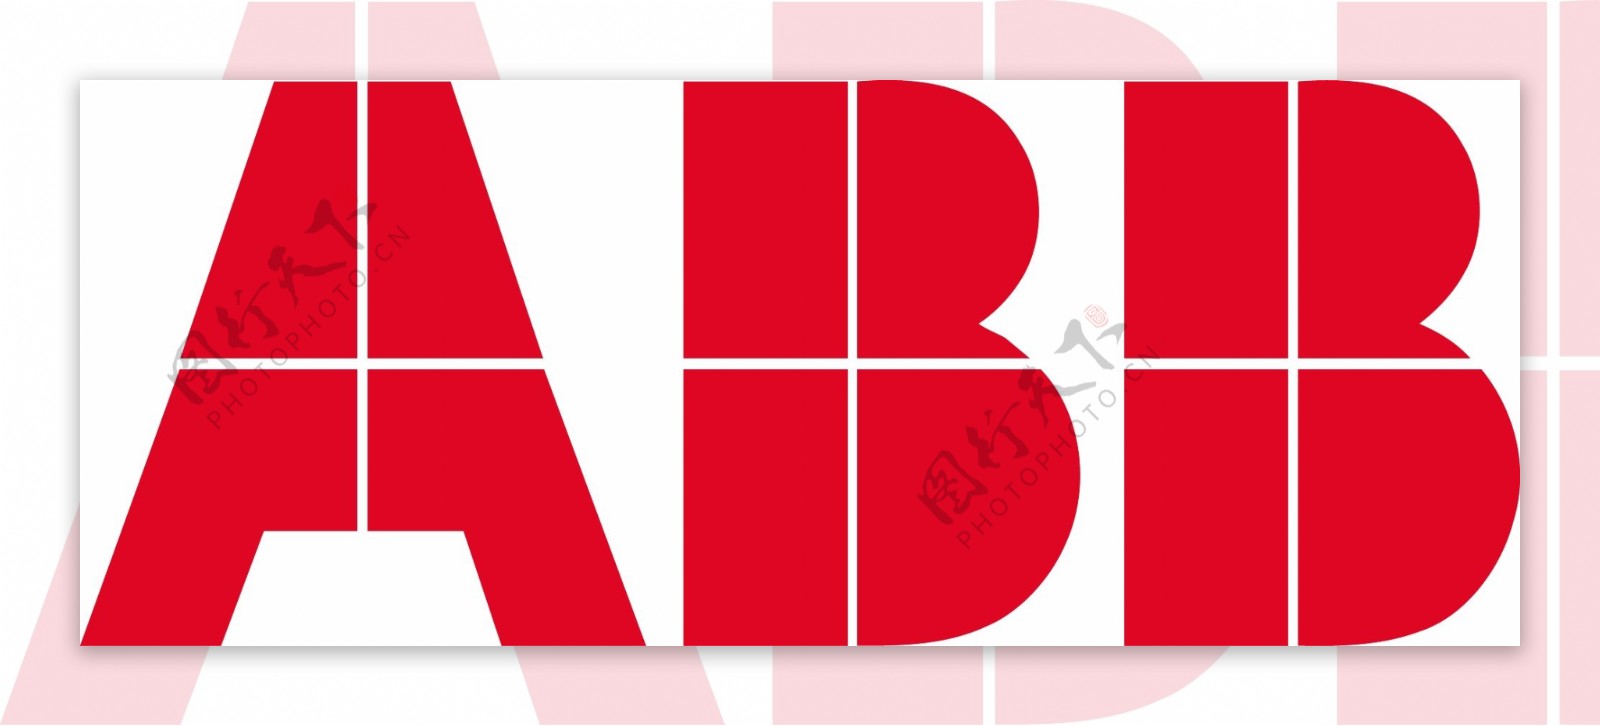 ABB企业标志ABBlogo图片